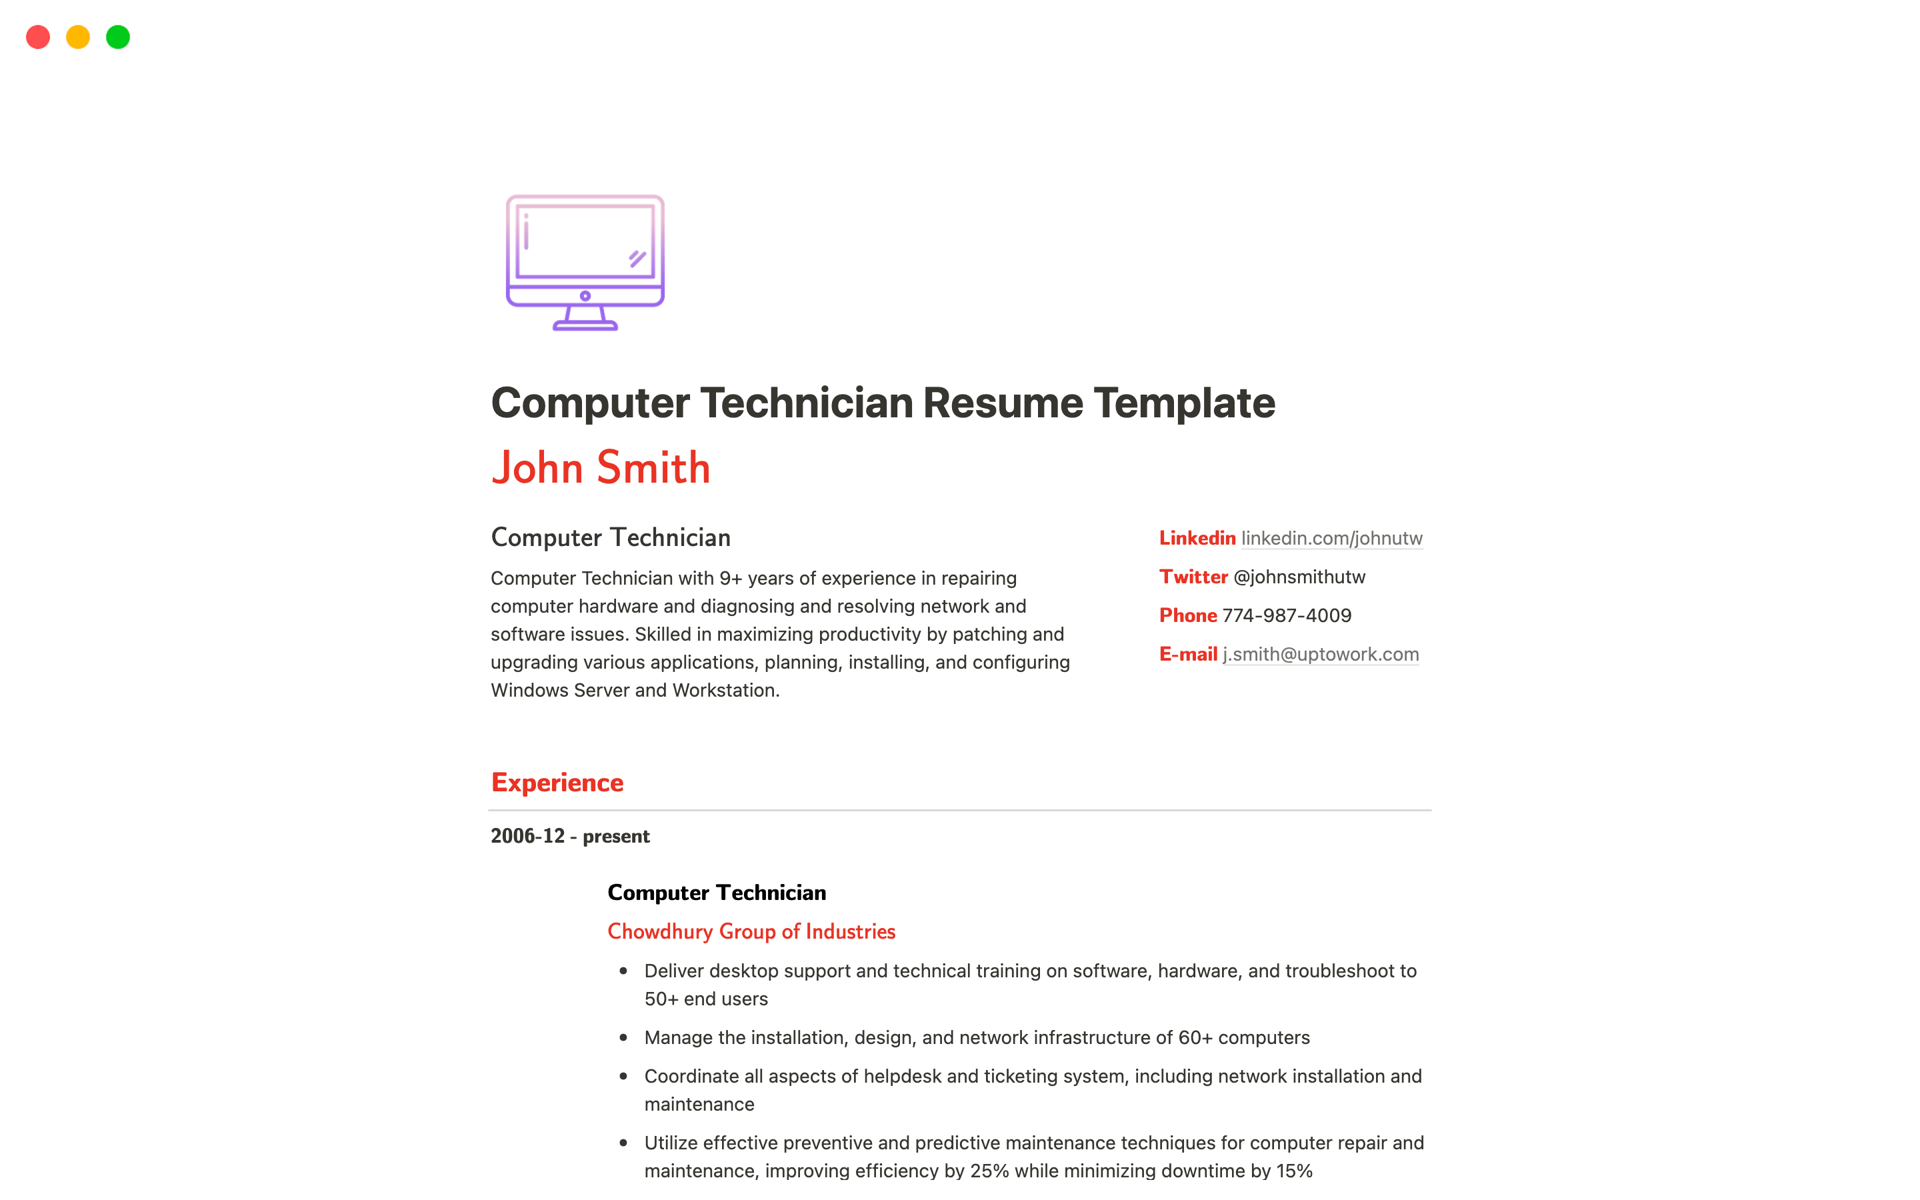 Uma prévia do modelo para Computer Technician Resume